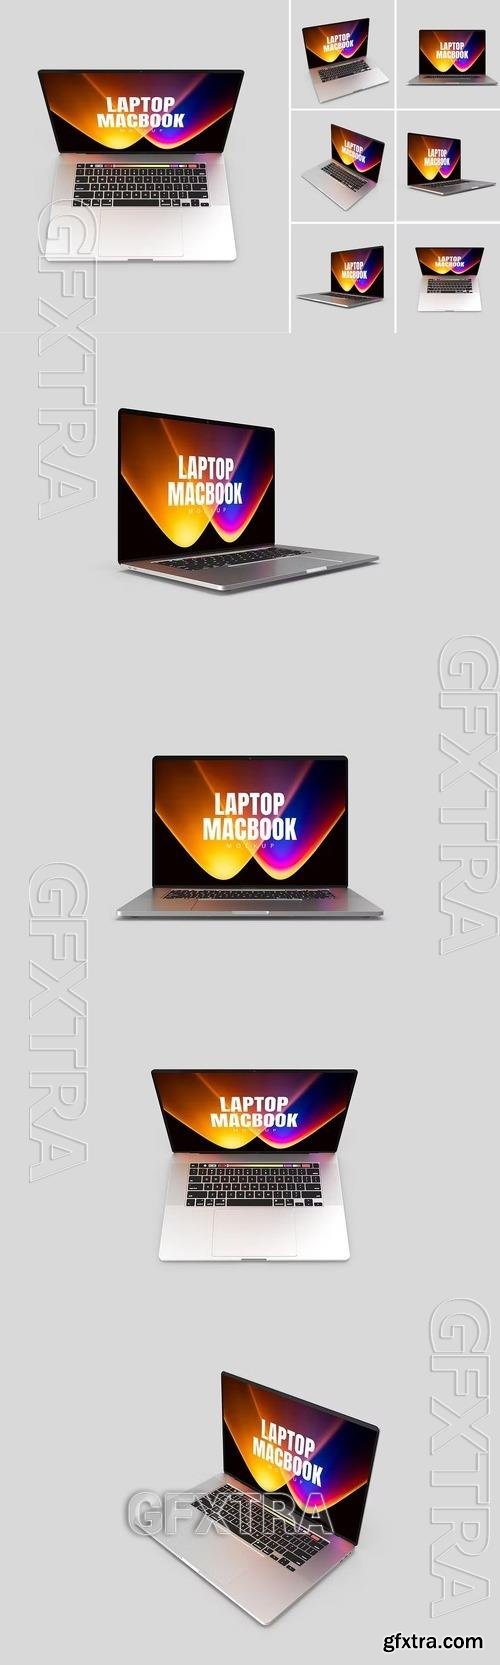 Laptop Macbook Display Web App Mock-Up GPAYNB4